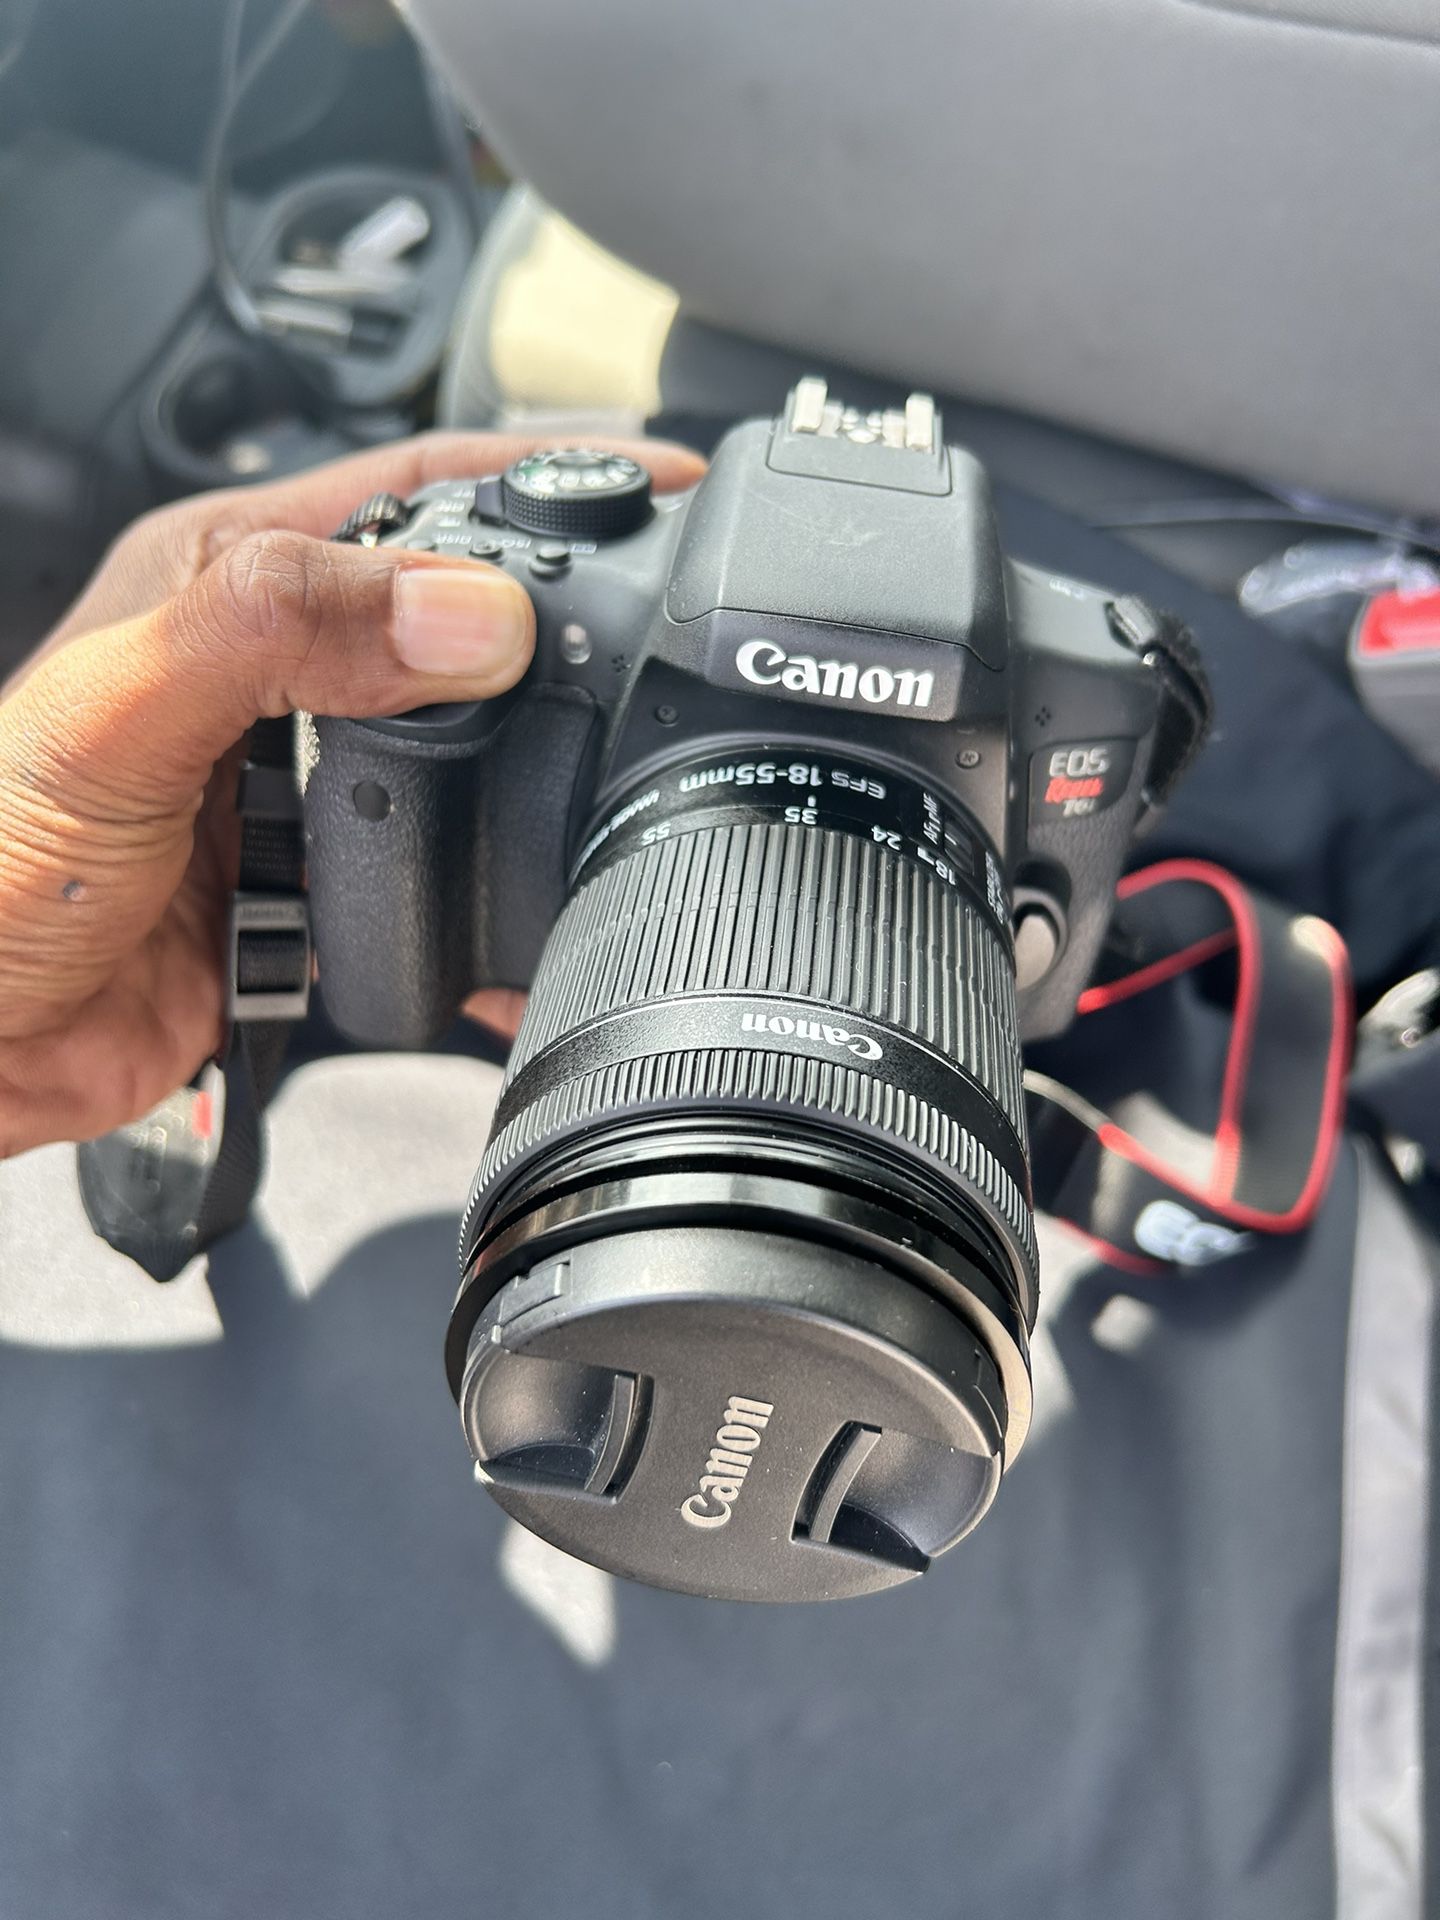 Canon Camera Rebel TI 6